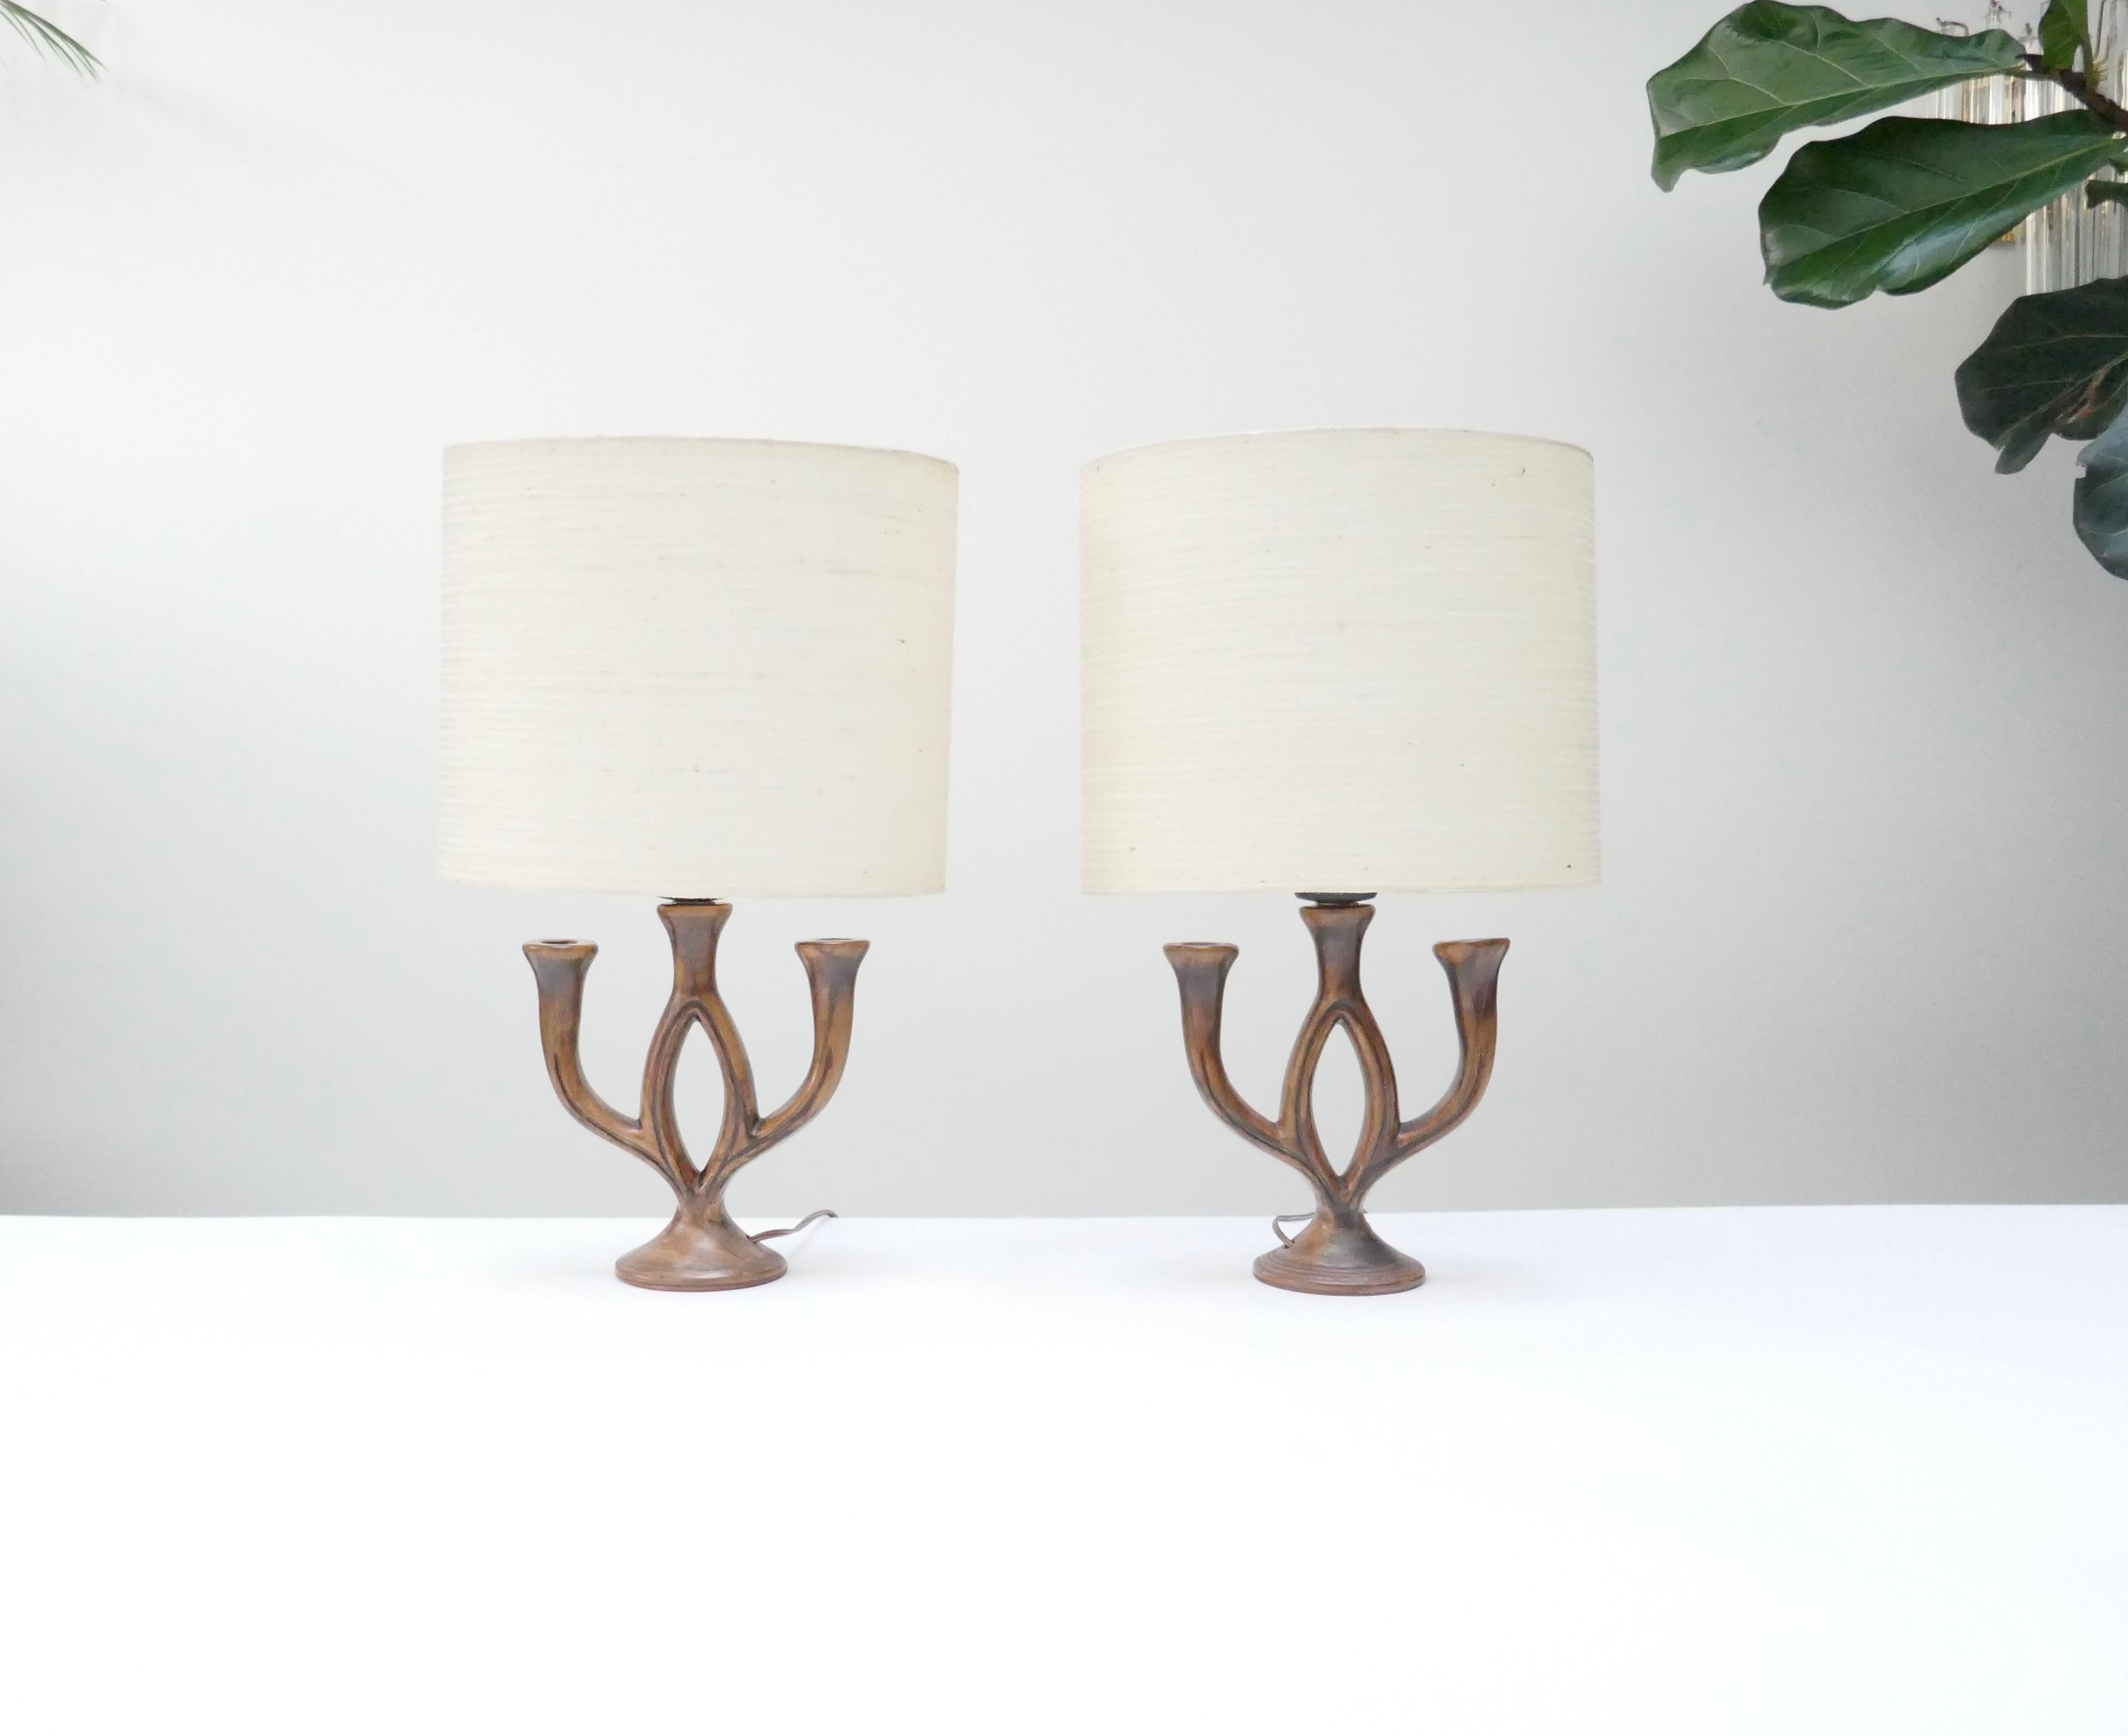 2 gut dimensionierte braune Tischlampen aus Keramik signiert Les Grottes Dieulefit .
Ursprünglich Kerzenhalter, die als Tischlampen verdrahtet wurden. 
Sie sind holzähnlich lackiert mit matter Oberfläche.

Sie sind das Werk der Poterie Les Grottes